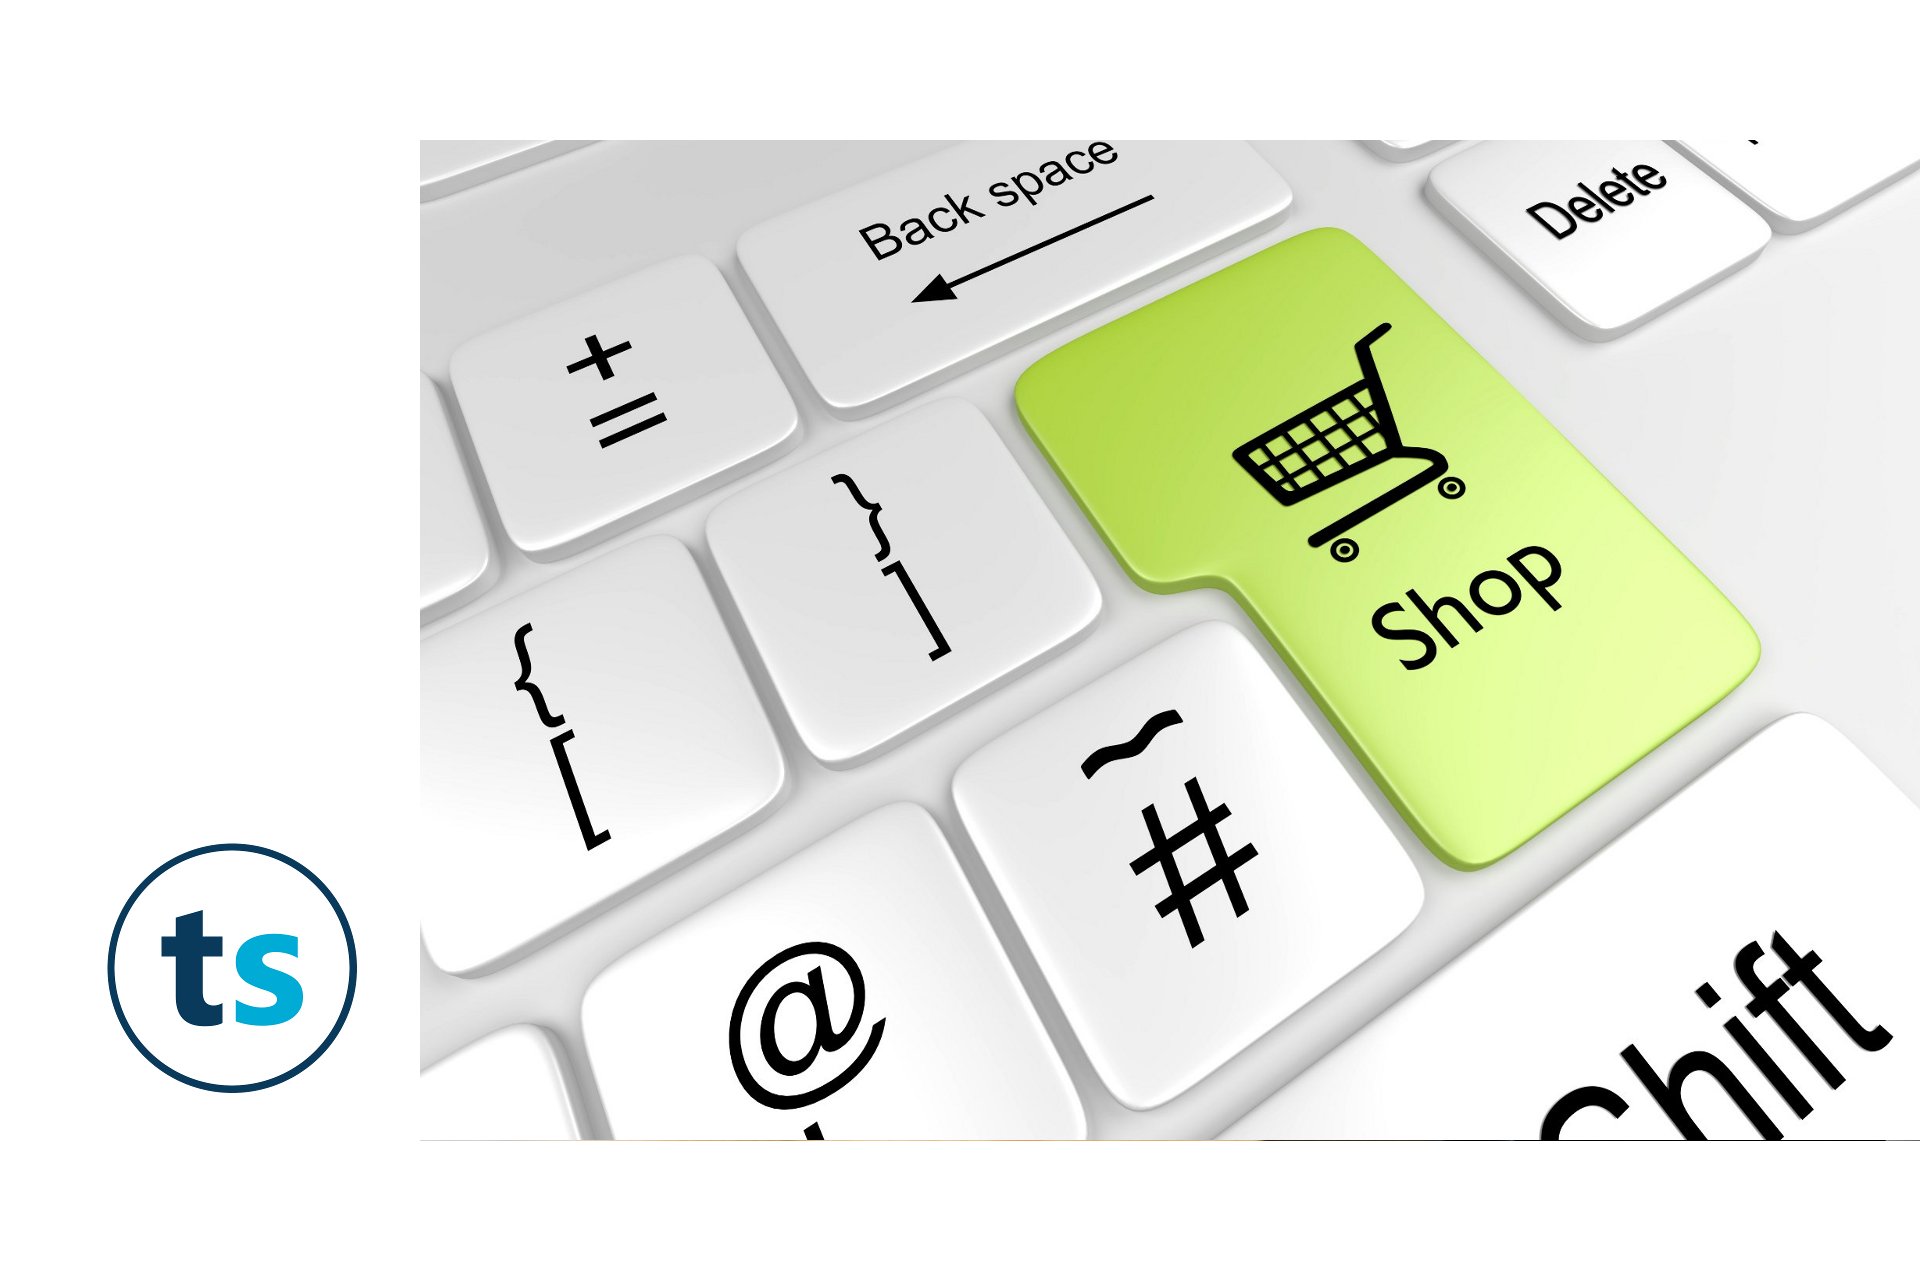 Co każda marka powinna wiedzieć zanim rozpocznie działania w obszarze e-commerce?